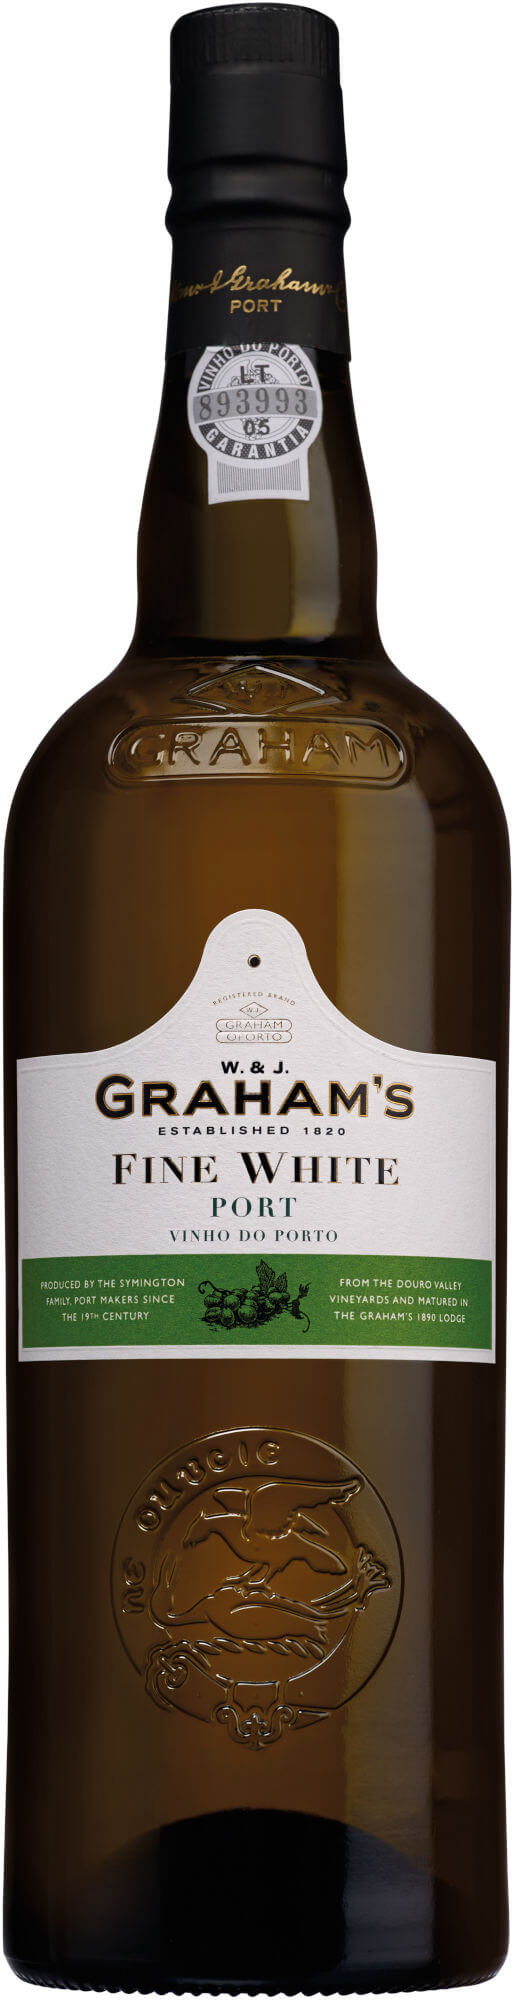 Grahams-Fine-White-Port